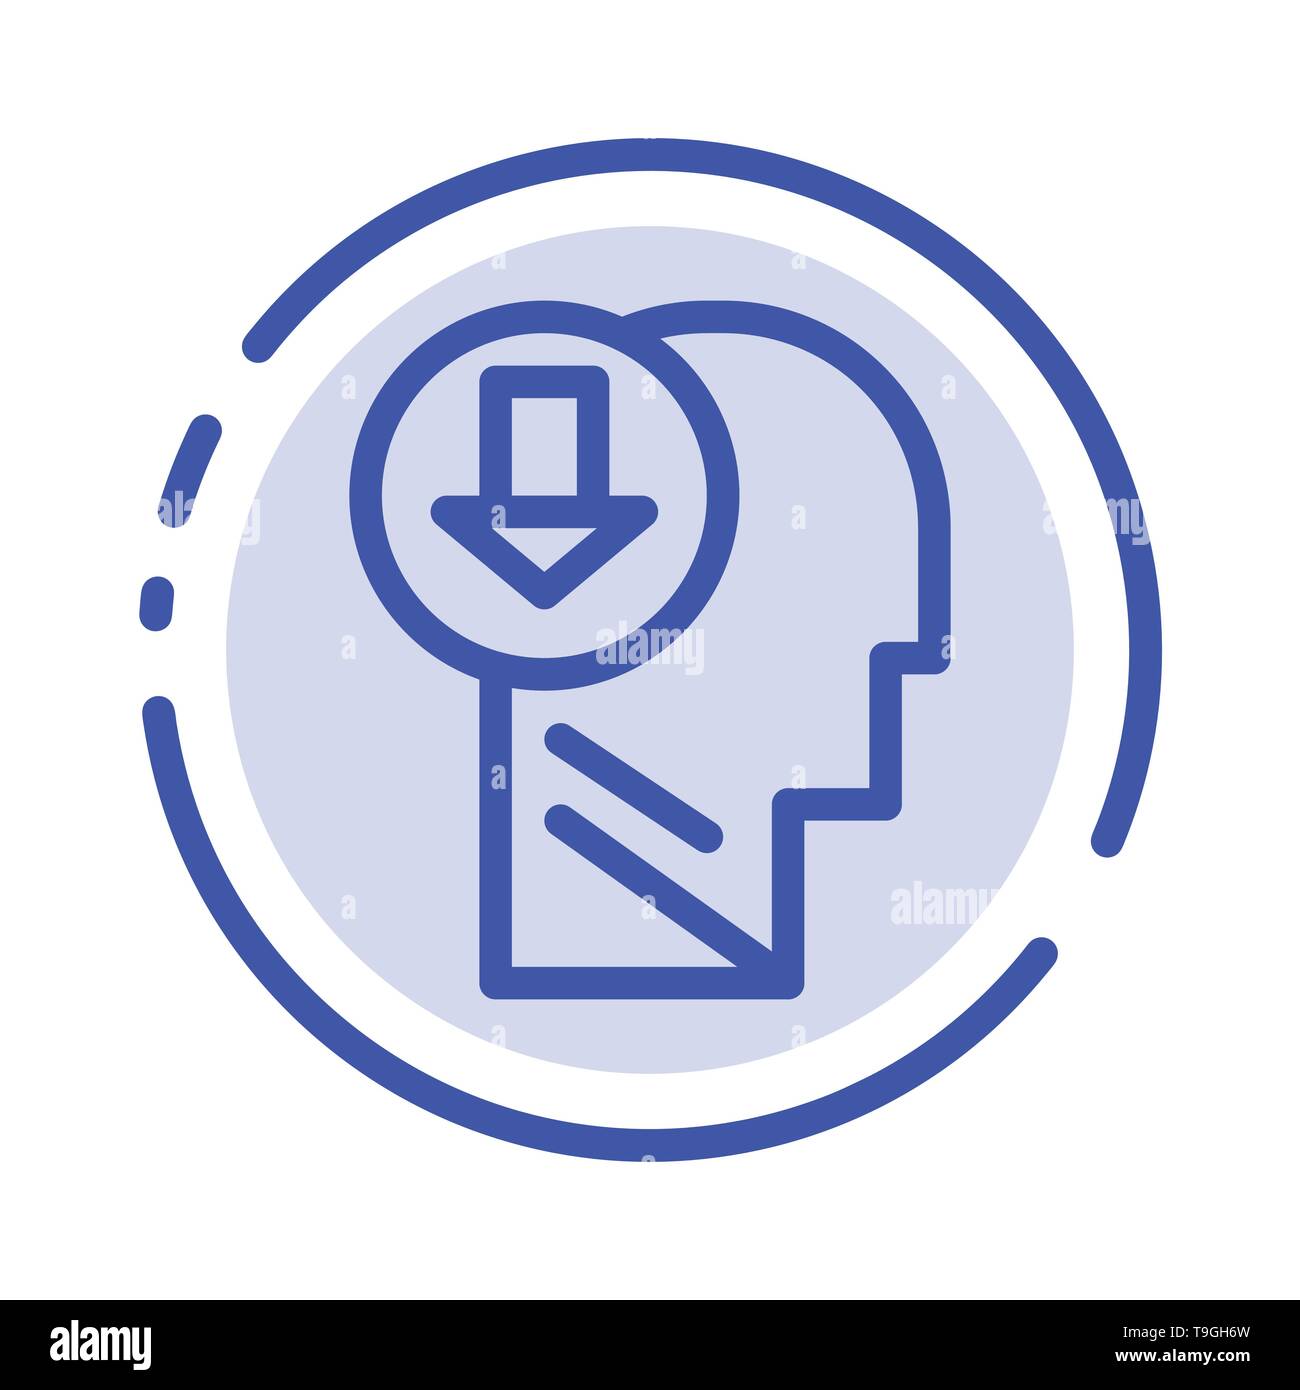 Flèche, Head, en connaissances, en bas sur l'icône de la ligne en pointillé bleu Illustration de Vecteur